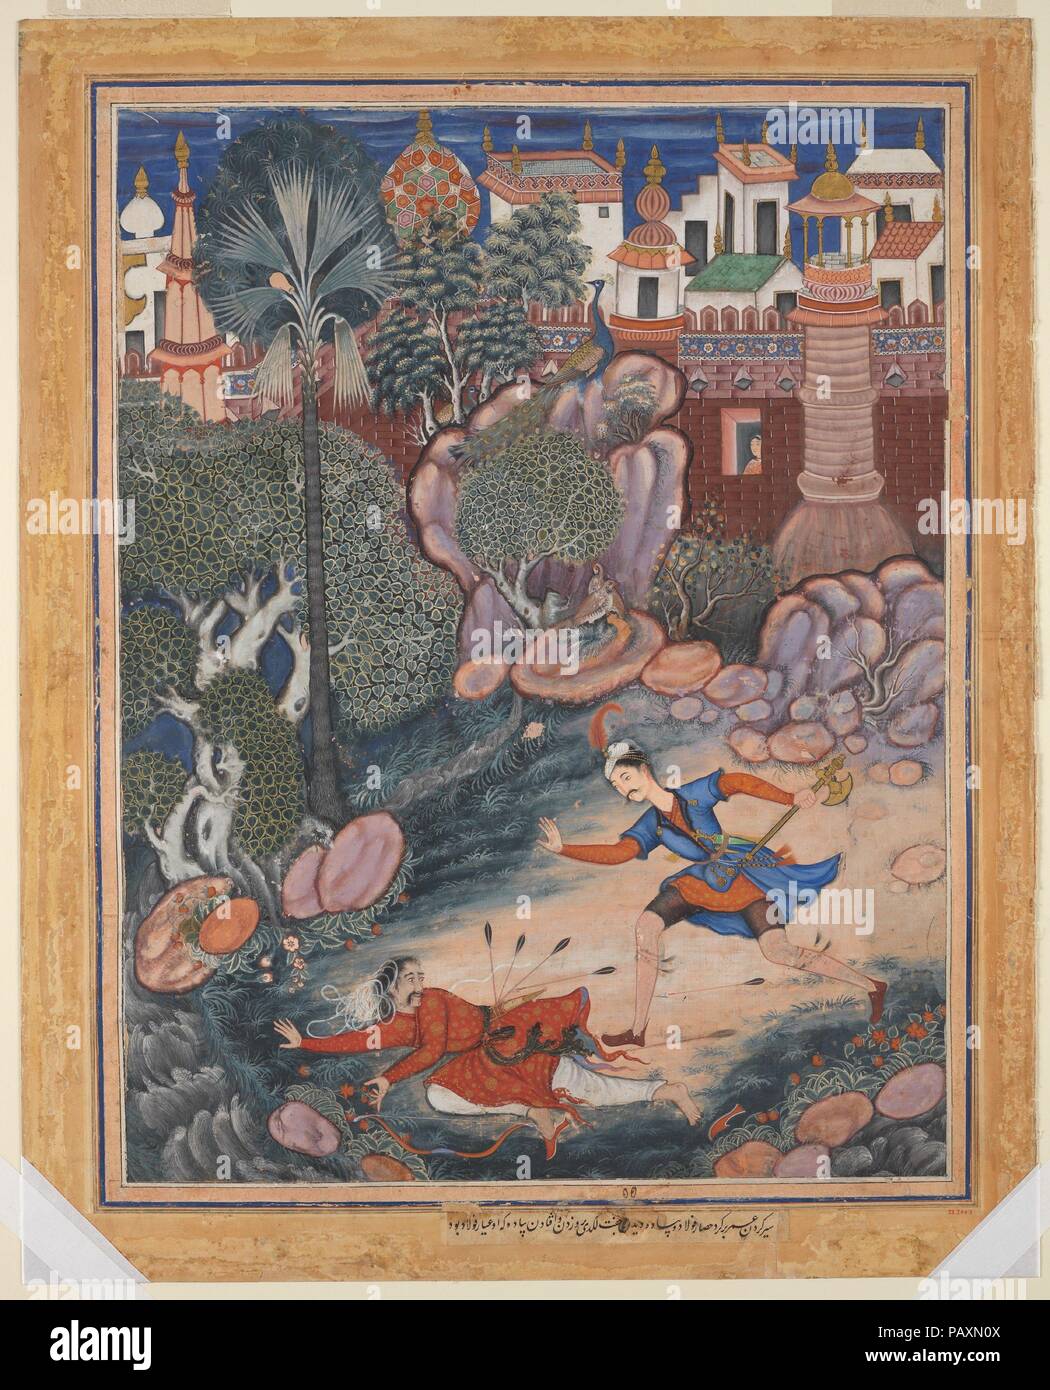 ''Umar passeggiate intorno al castello Fulad, incontra un soldato del piede e calci lui a terra", Folio da un Hamzanama (Le avventure di Hamza). Artista: attribuito a Kesav Das (active ca. 1570-1604); attribuita a Mah Muhammad (attivo1570s). Dimensioni: H. 28 3/4 in. (73 cm) W. 22 1/4 in. (56,5 cm). Data: ca. 1570. Il Hamzanama racconta la favola di Hamza, uno zio del Profeta Maometto che era un leggendario difensore della fede. Questo dipinto illustra un episodio che coinvolgono 'Umar, una spia fedele a Hamza, che apprende di un tunnel segreto nel castello Fulad del soldato che egli ha bested. Si tratta Foto Stock